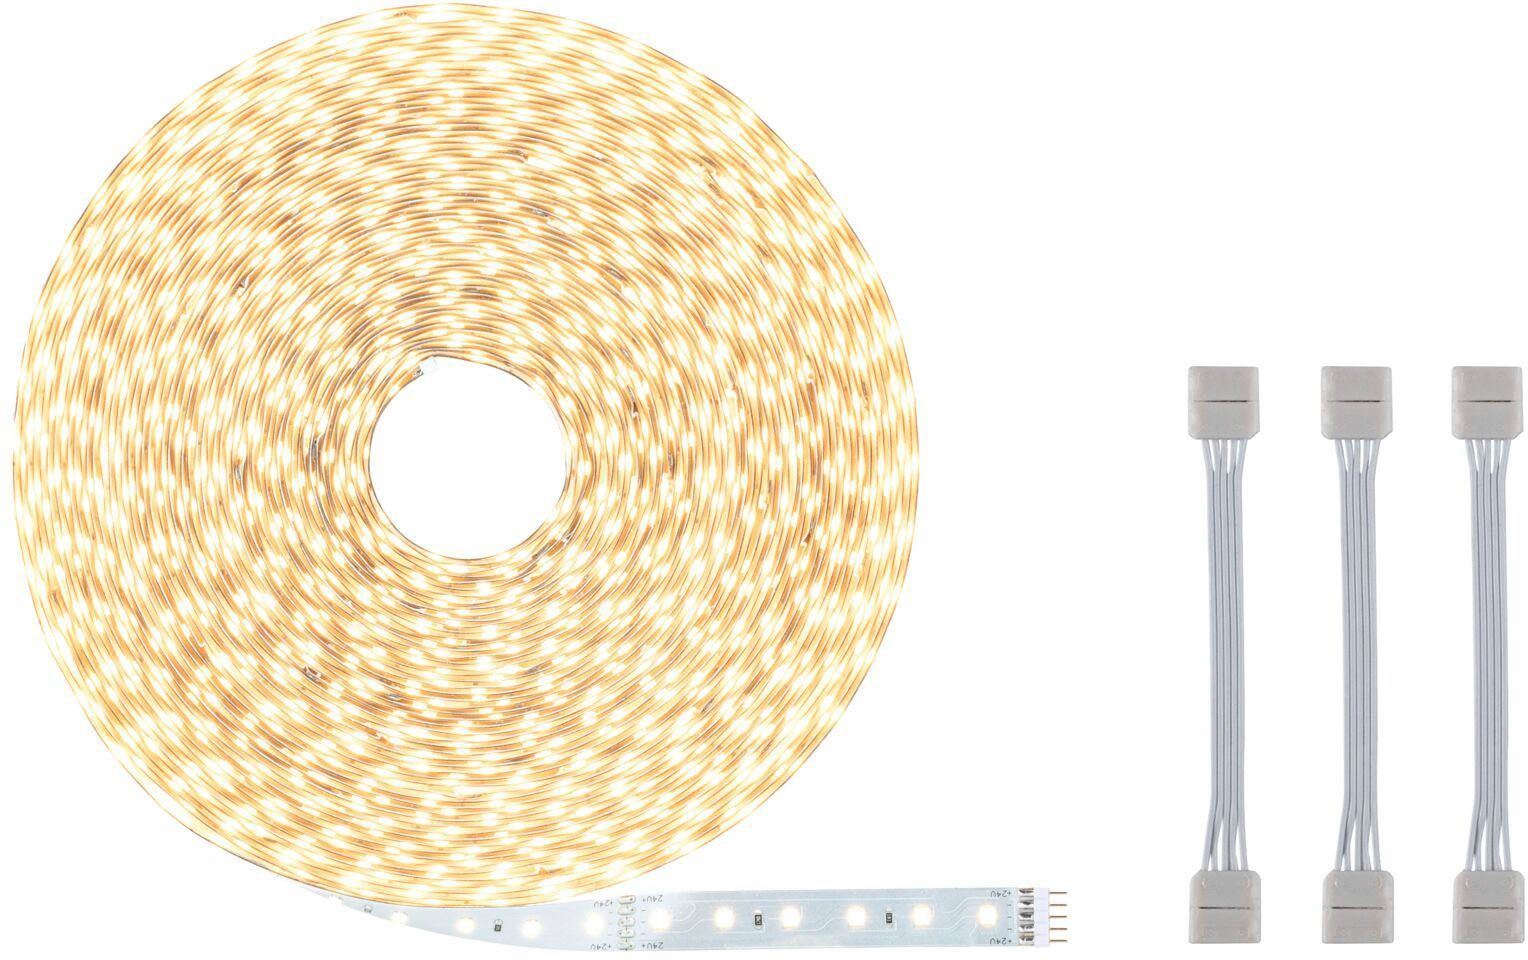 500 LED-Streifen 20m Warmweiße inkl. Adapterkabel 550lm/m, Paulmann 1-flammig, 72W unbeschichtet Einzelstripe MaxLED